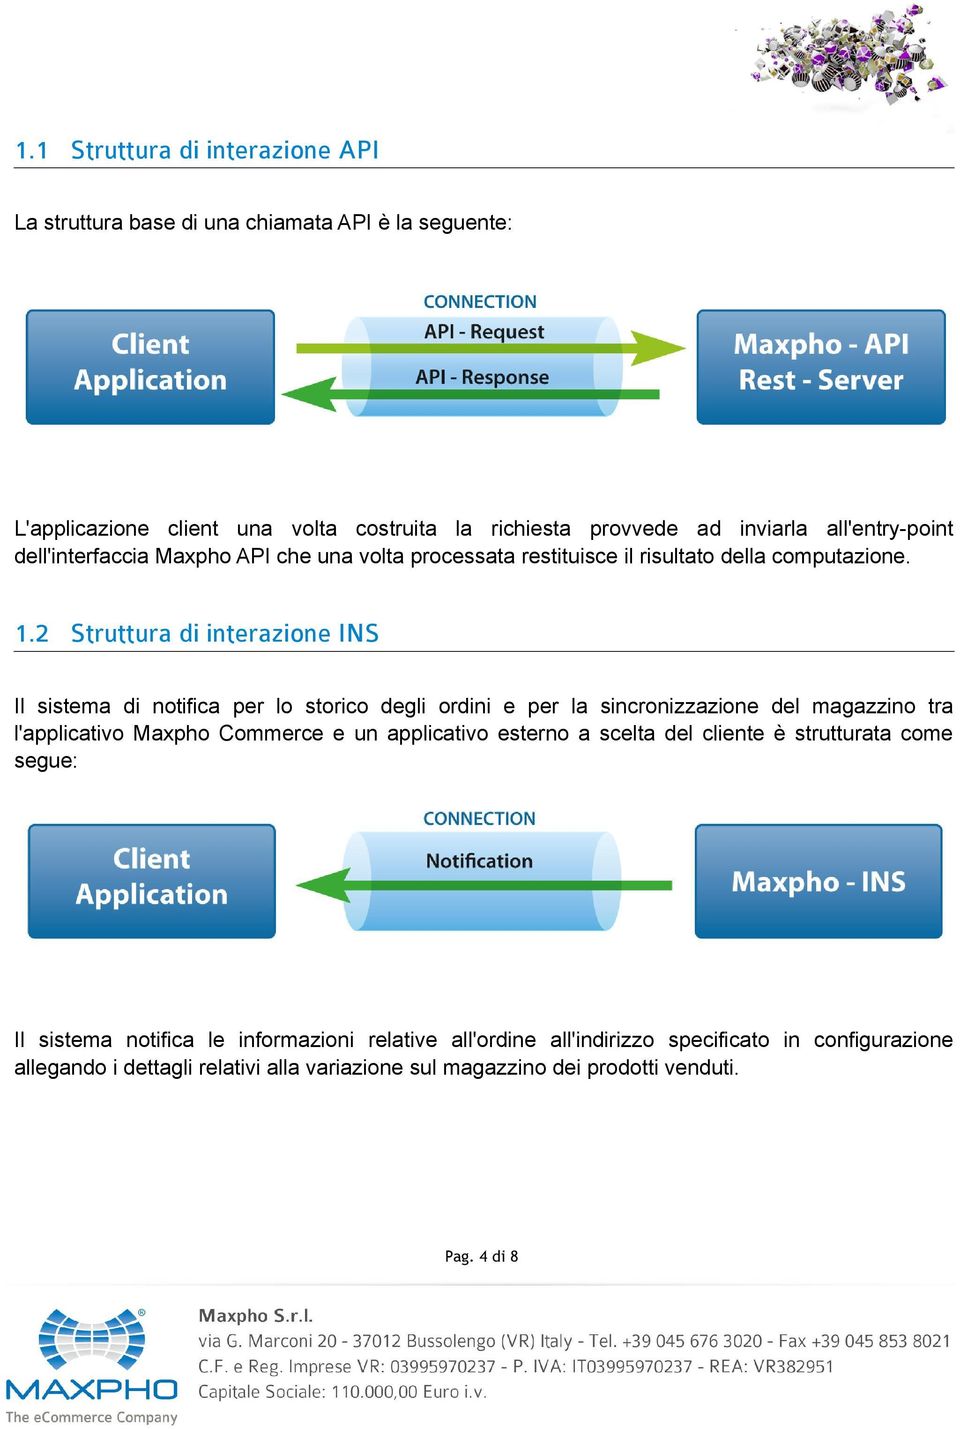 2 Struttura di interazione INS Il sistema di notifica per lo storico degli ordini e per la sincronizzazione del magazzino tra l'applicativo Maxpho Commerce e un applicativo